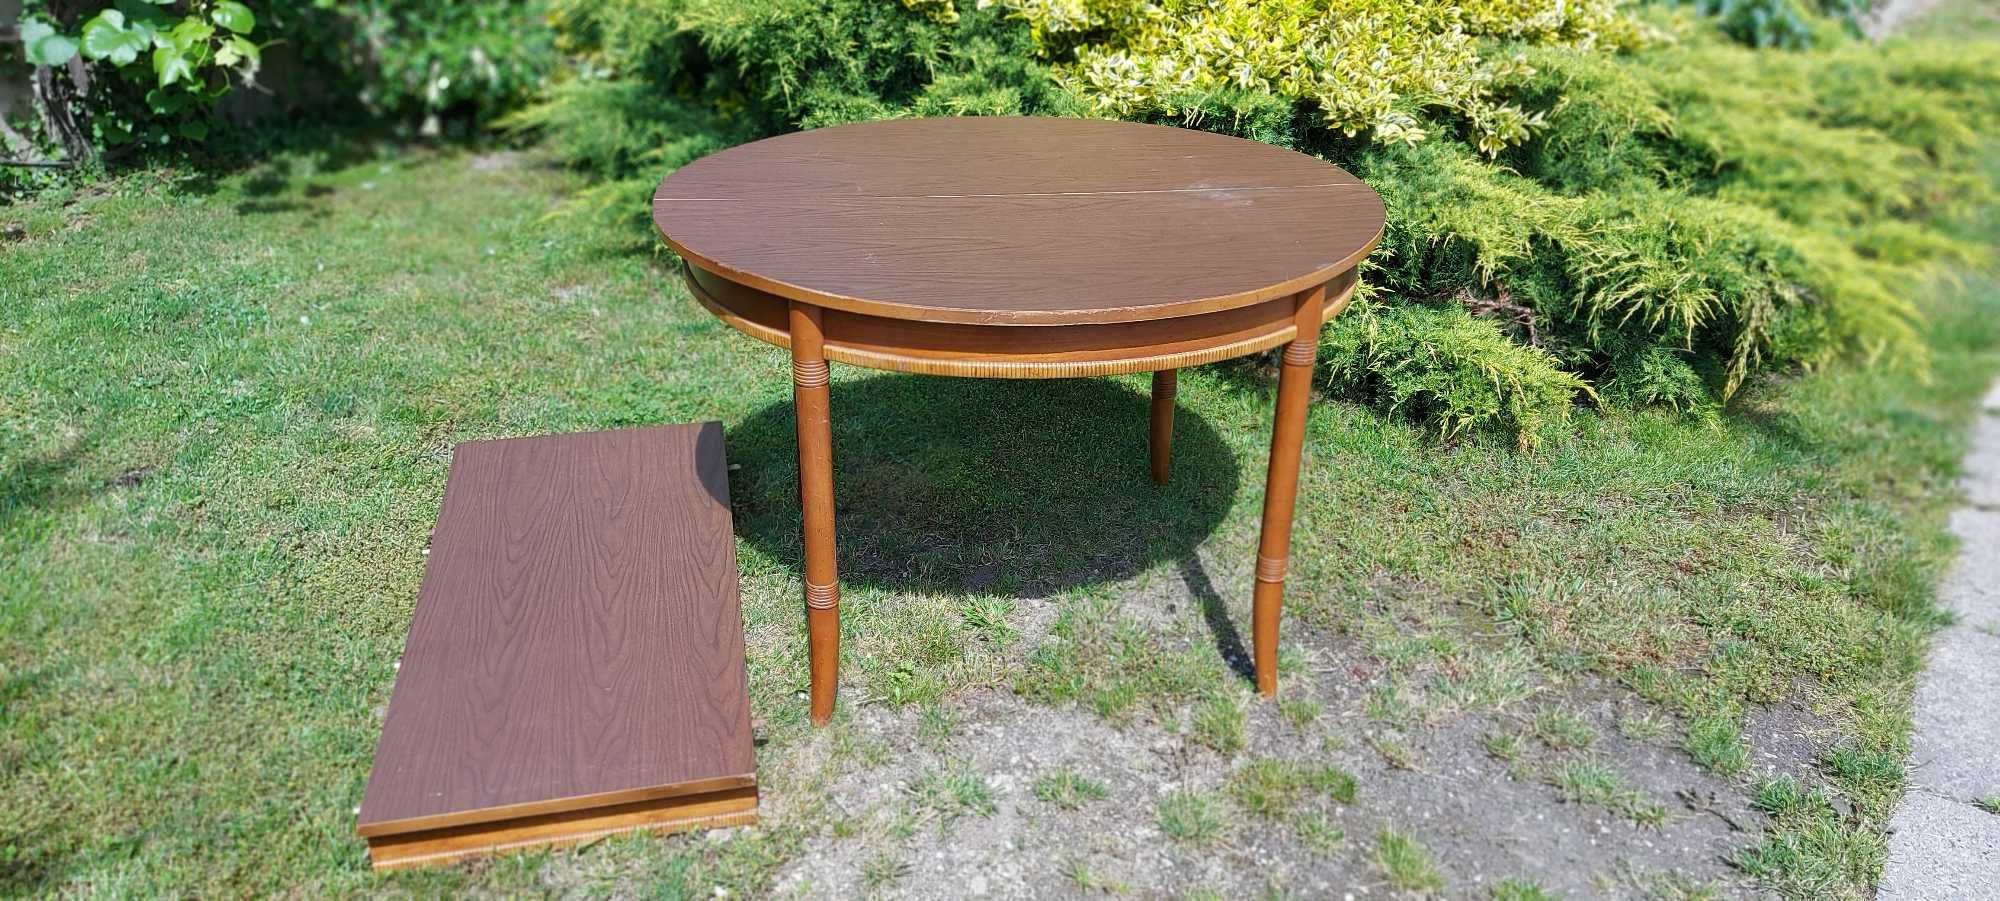 Stół rozkładany stylizowany